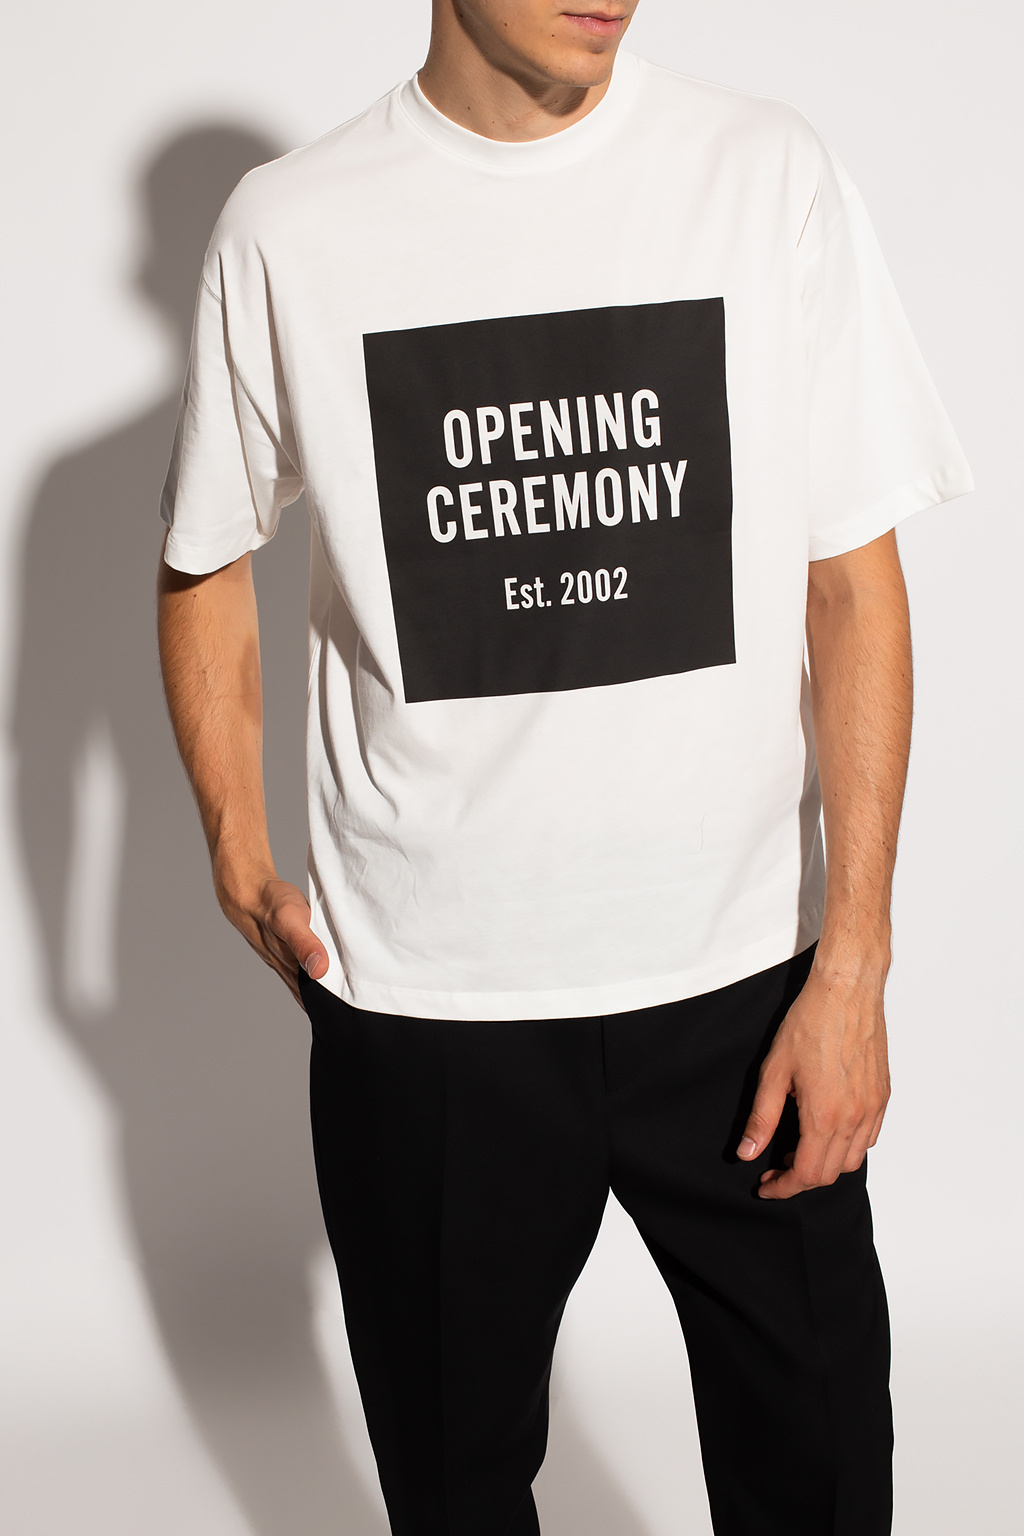 OPENING CEREMONY Tシャツ